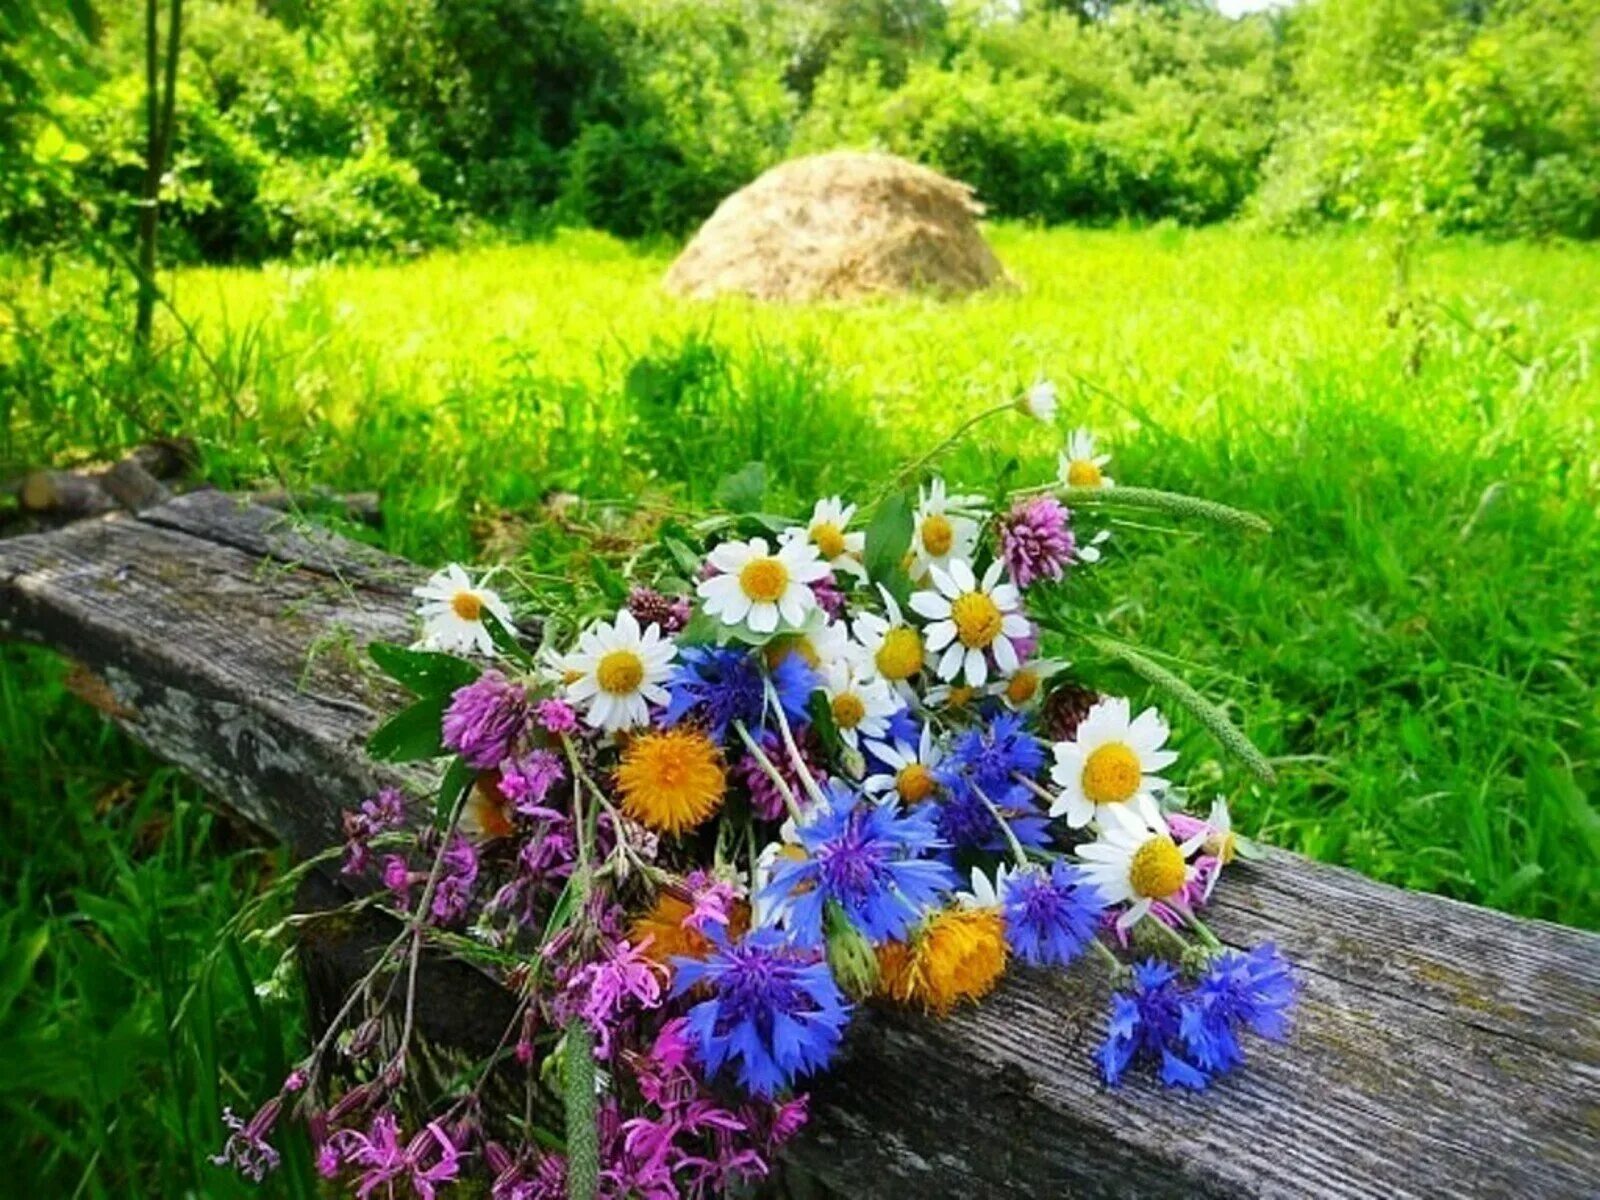 Хорошего дня последних дней лета. Летние цветы. Августовские полевые цветы. Летние деньки. Август природа.